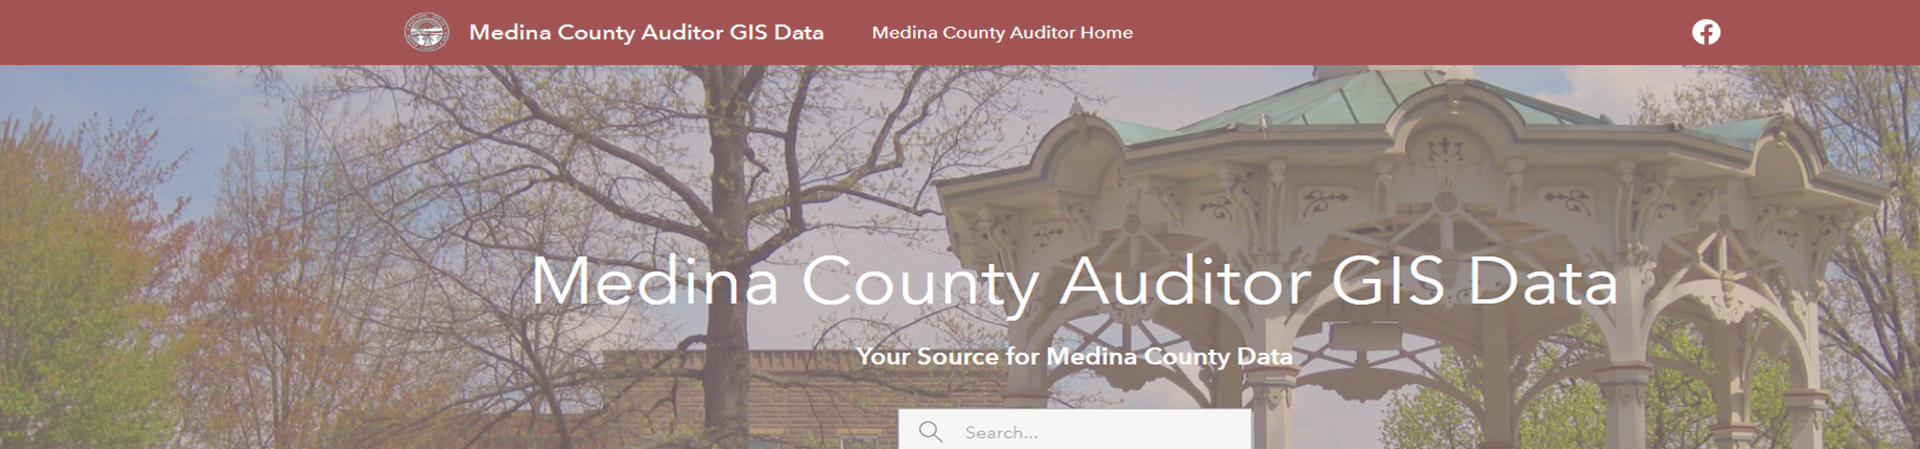 Auditor GIS Website